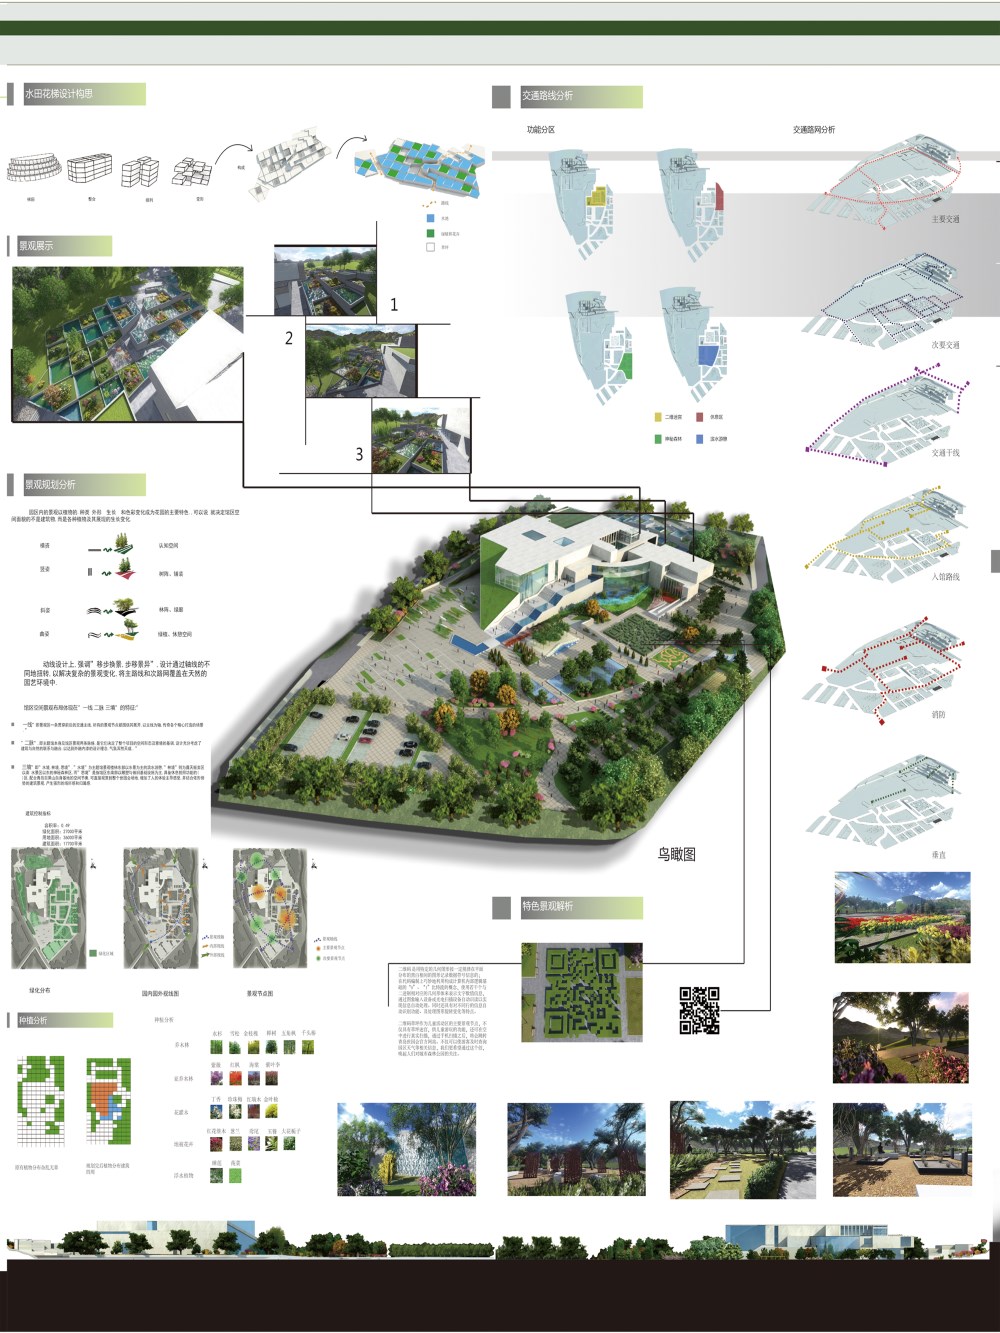 2014青岛世界园艺博览会主题体验馆景观设计-1